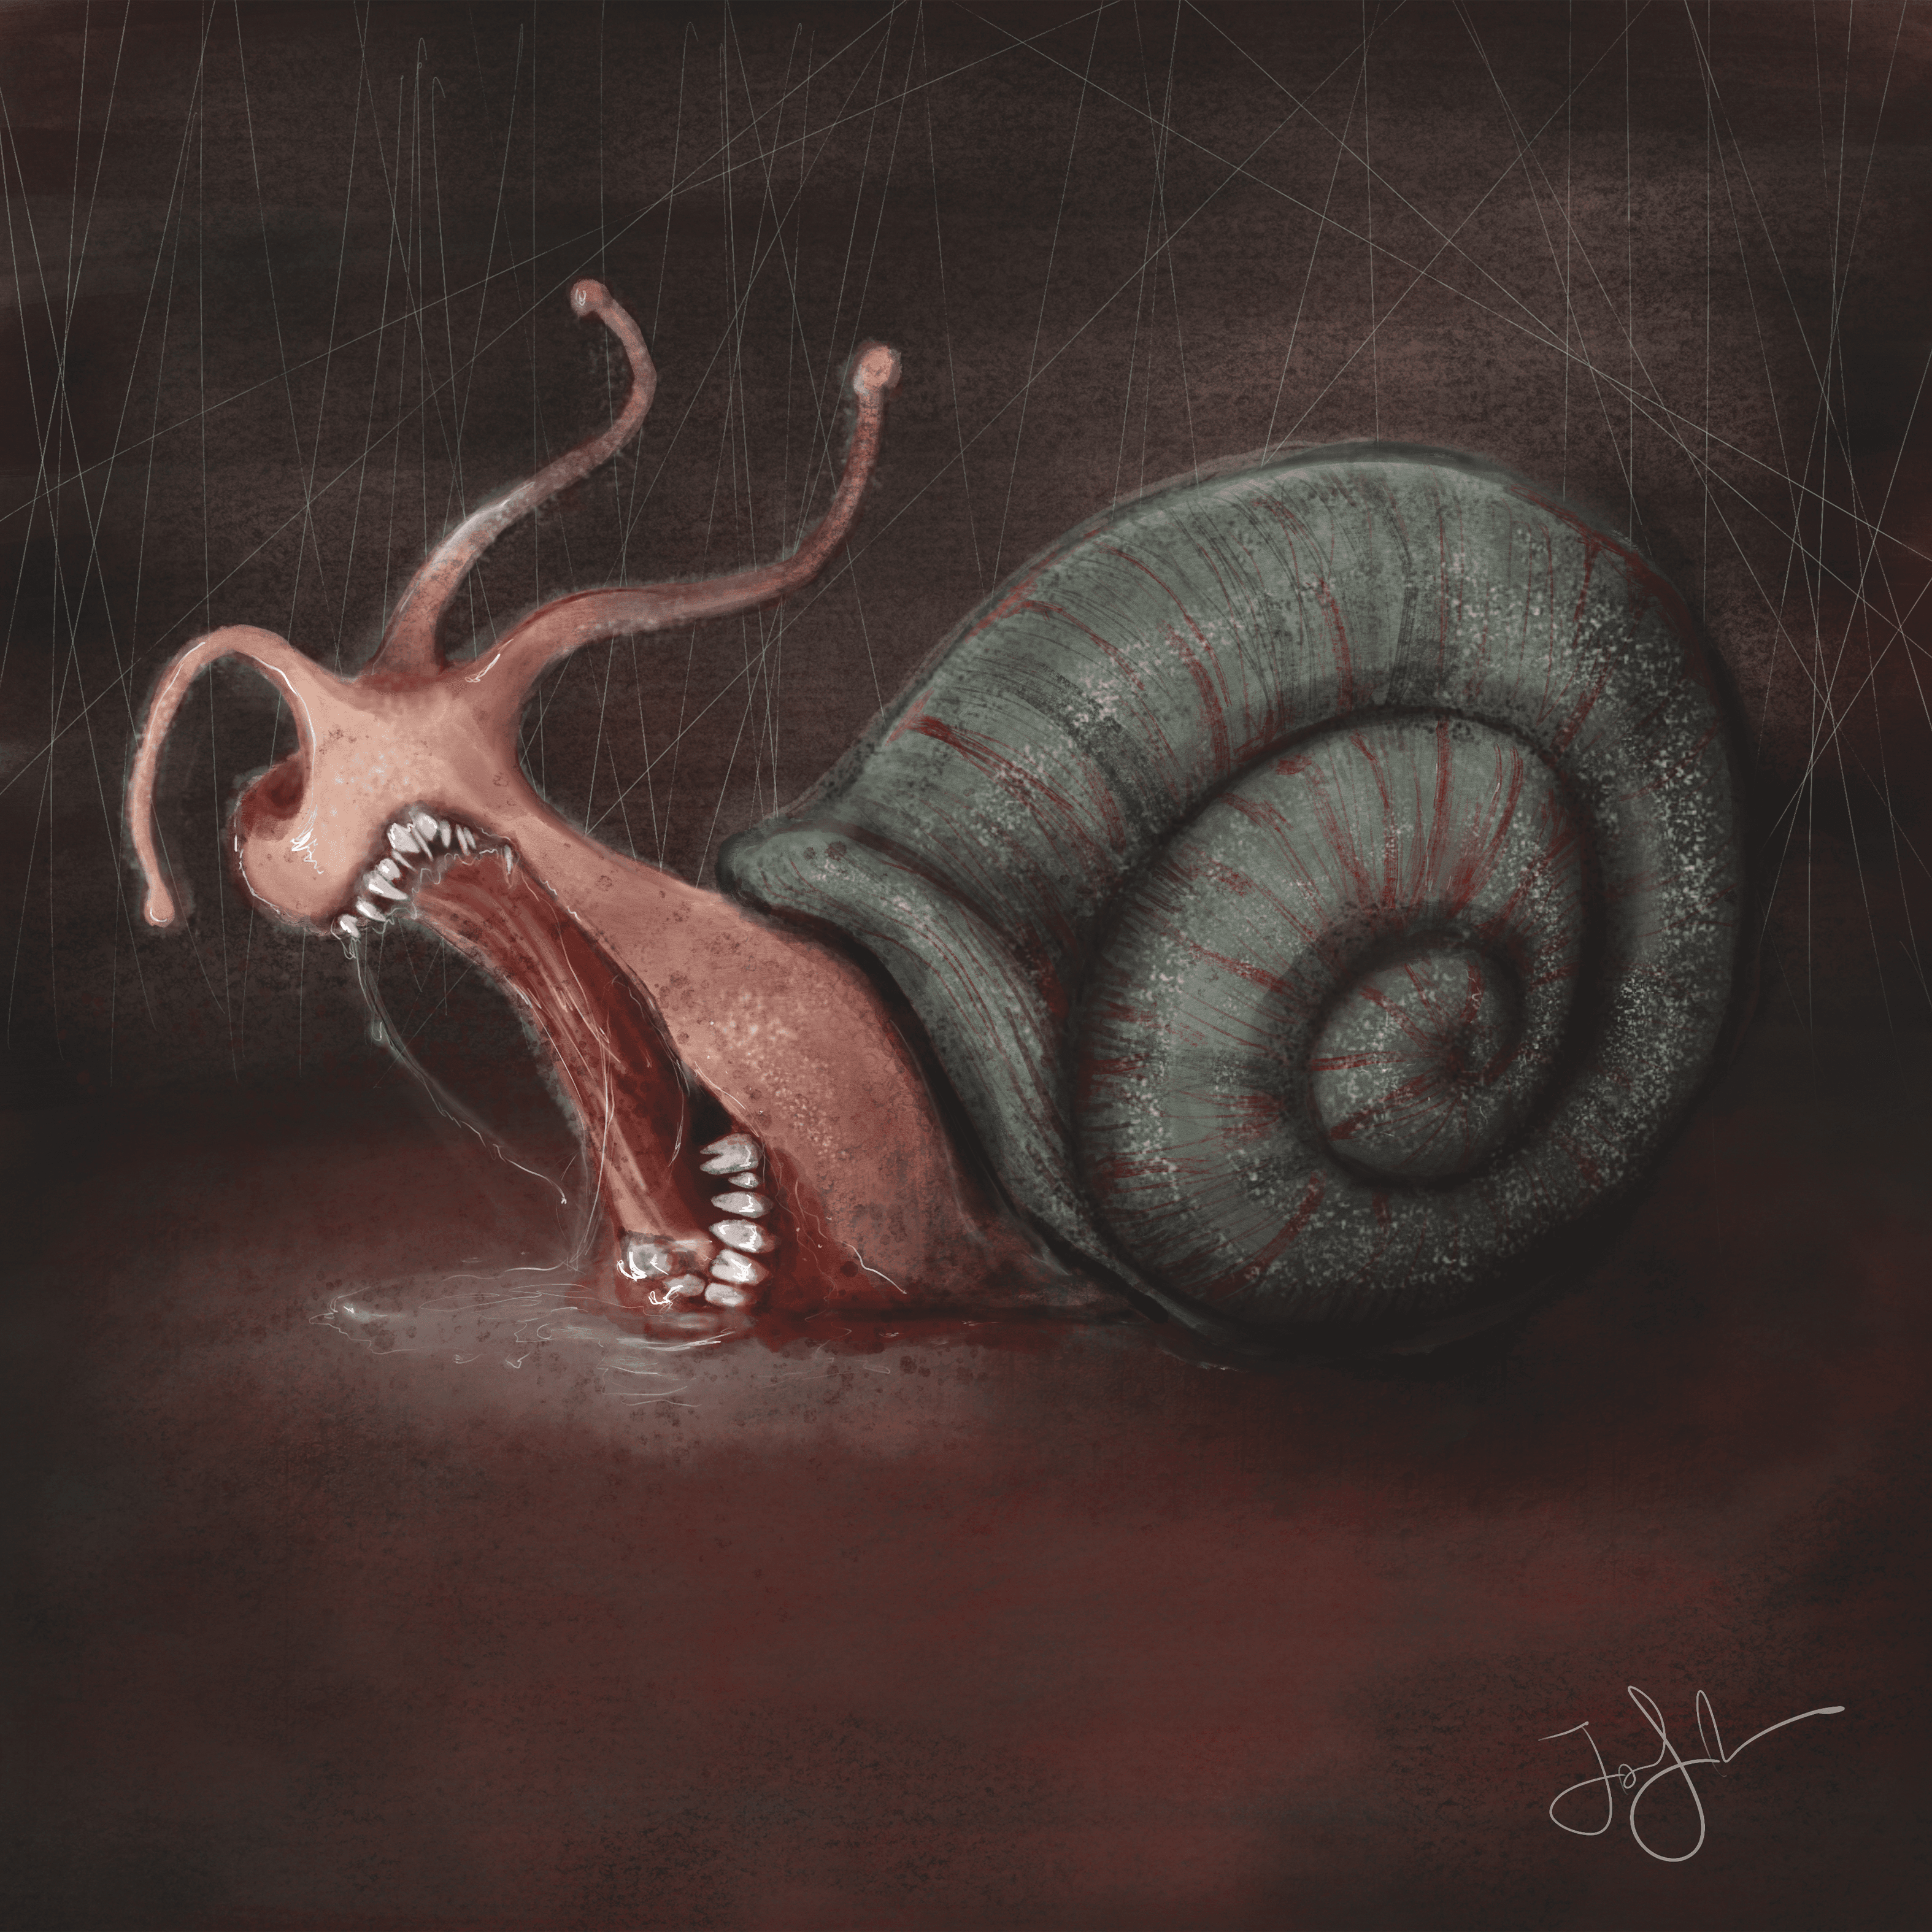 A Scary Snail